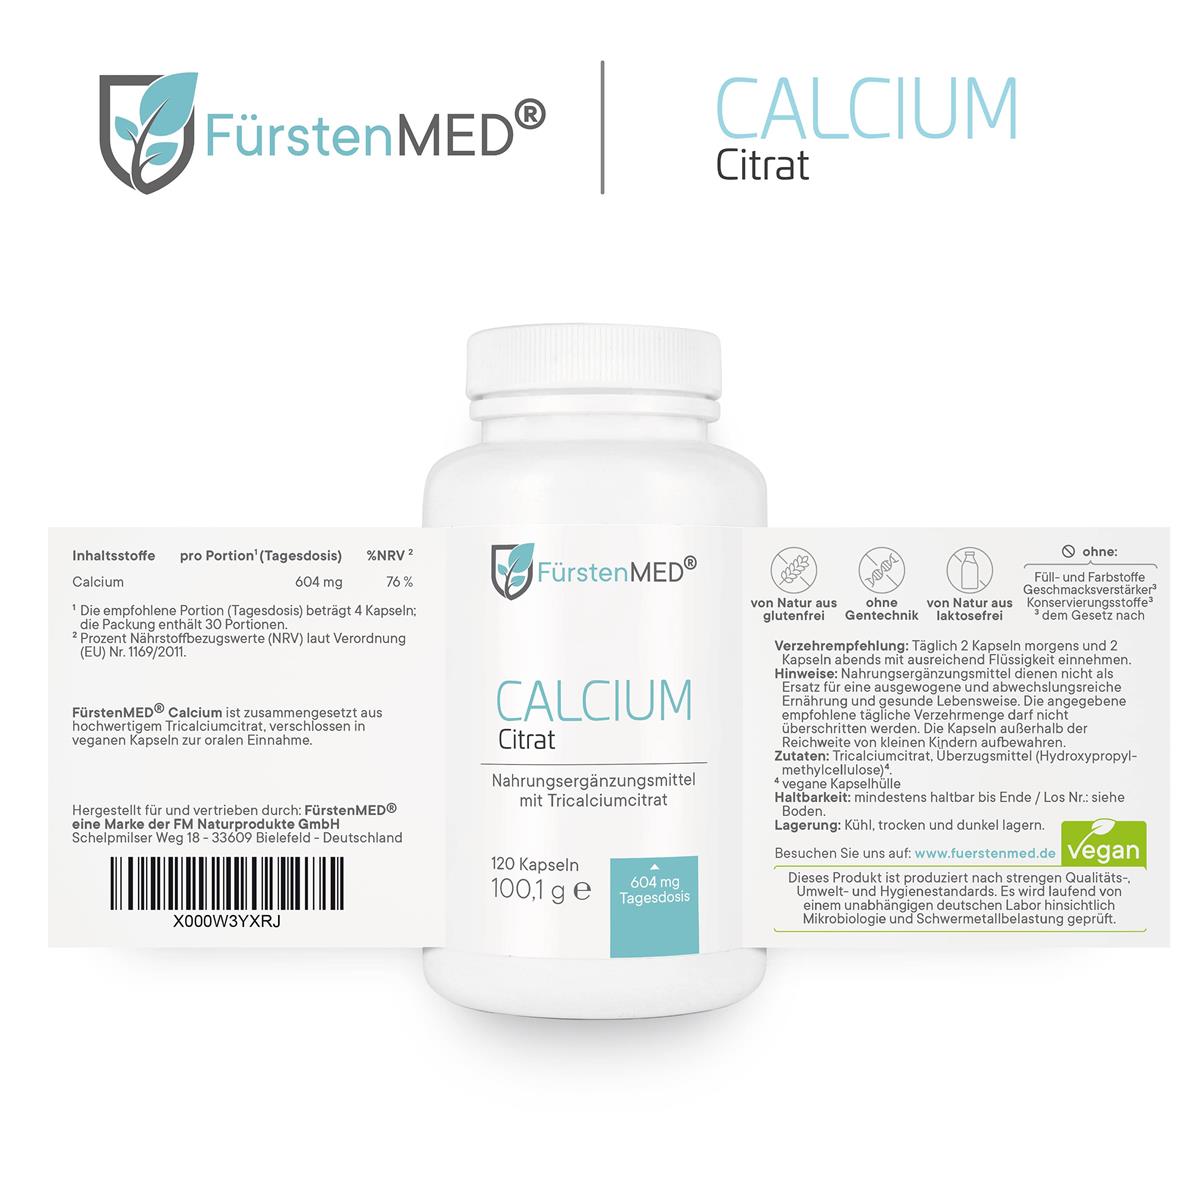 
                  
                    FürstenMED Calcium Citrat 120 Kapseln
                  
                